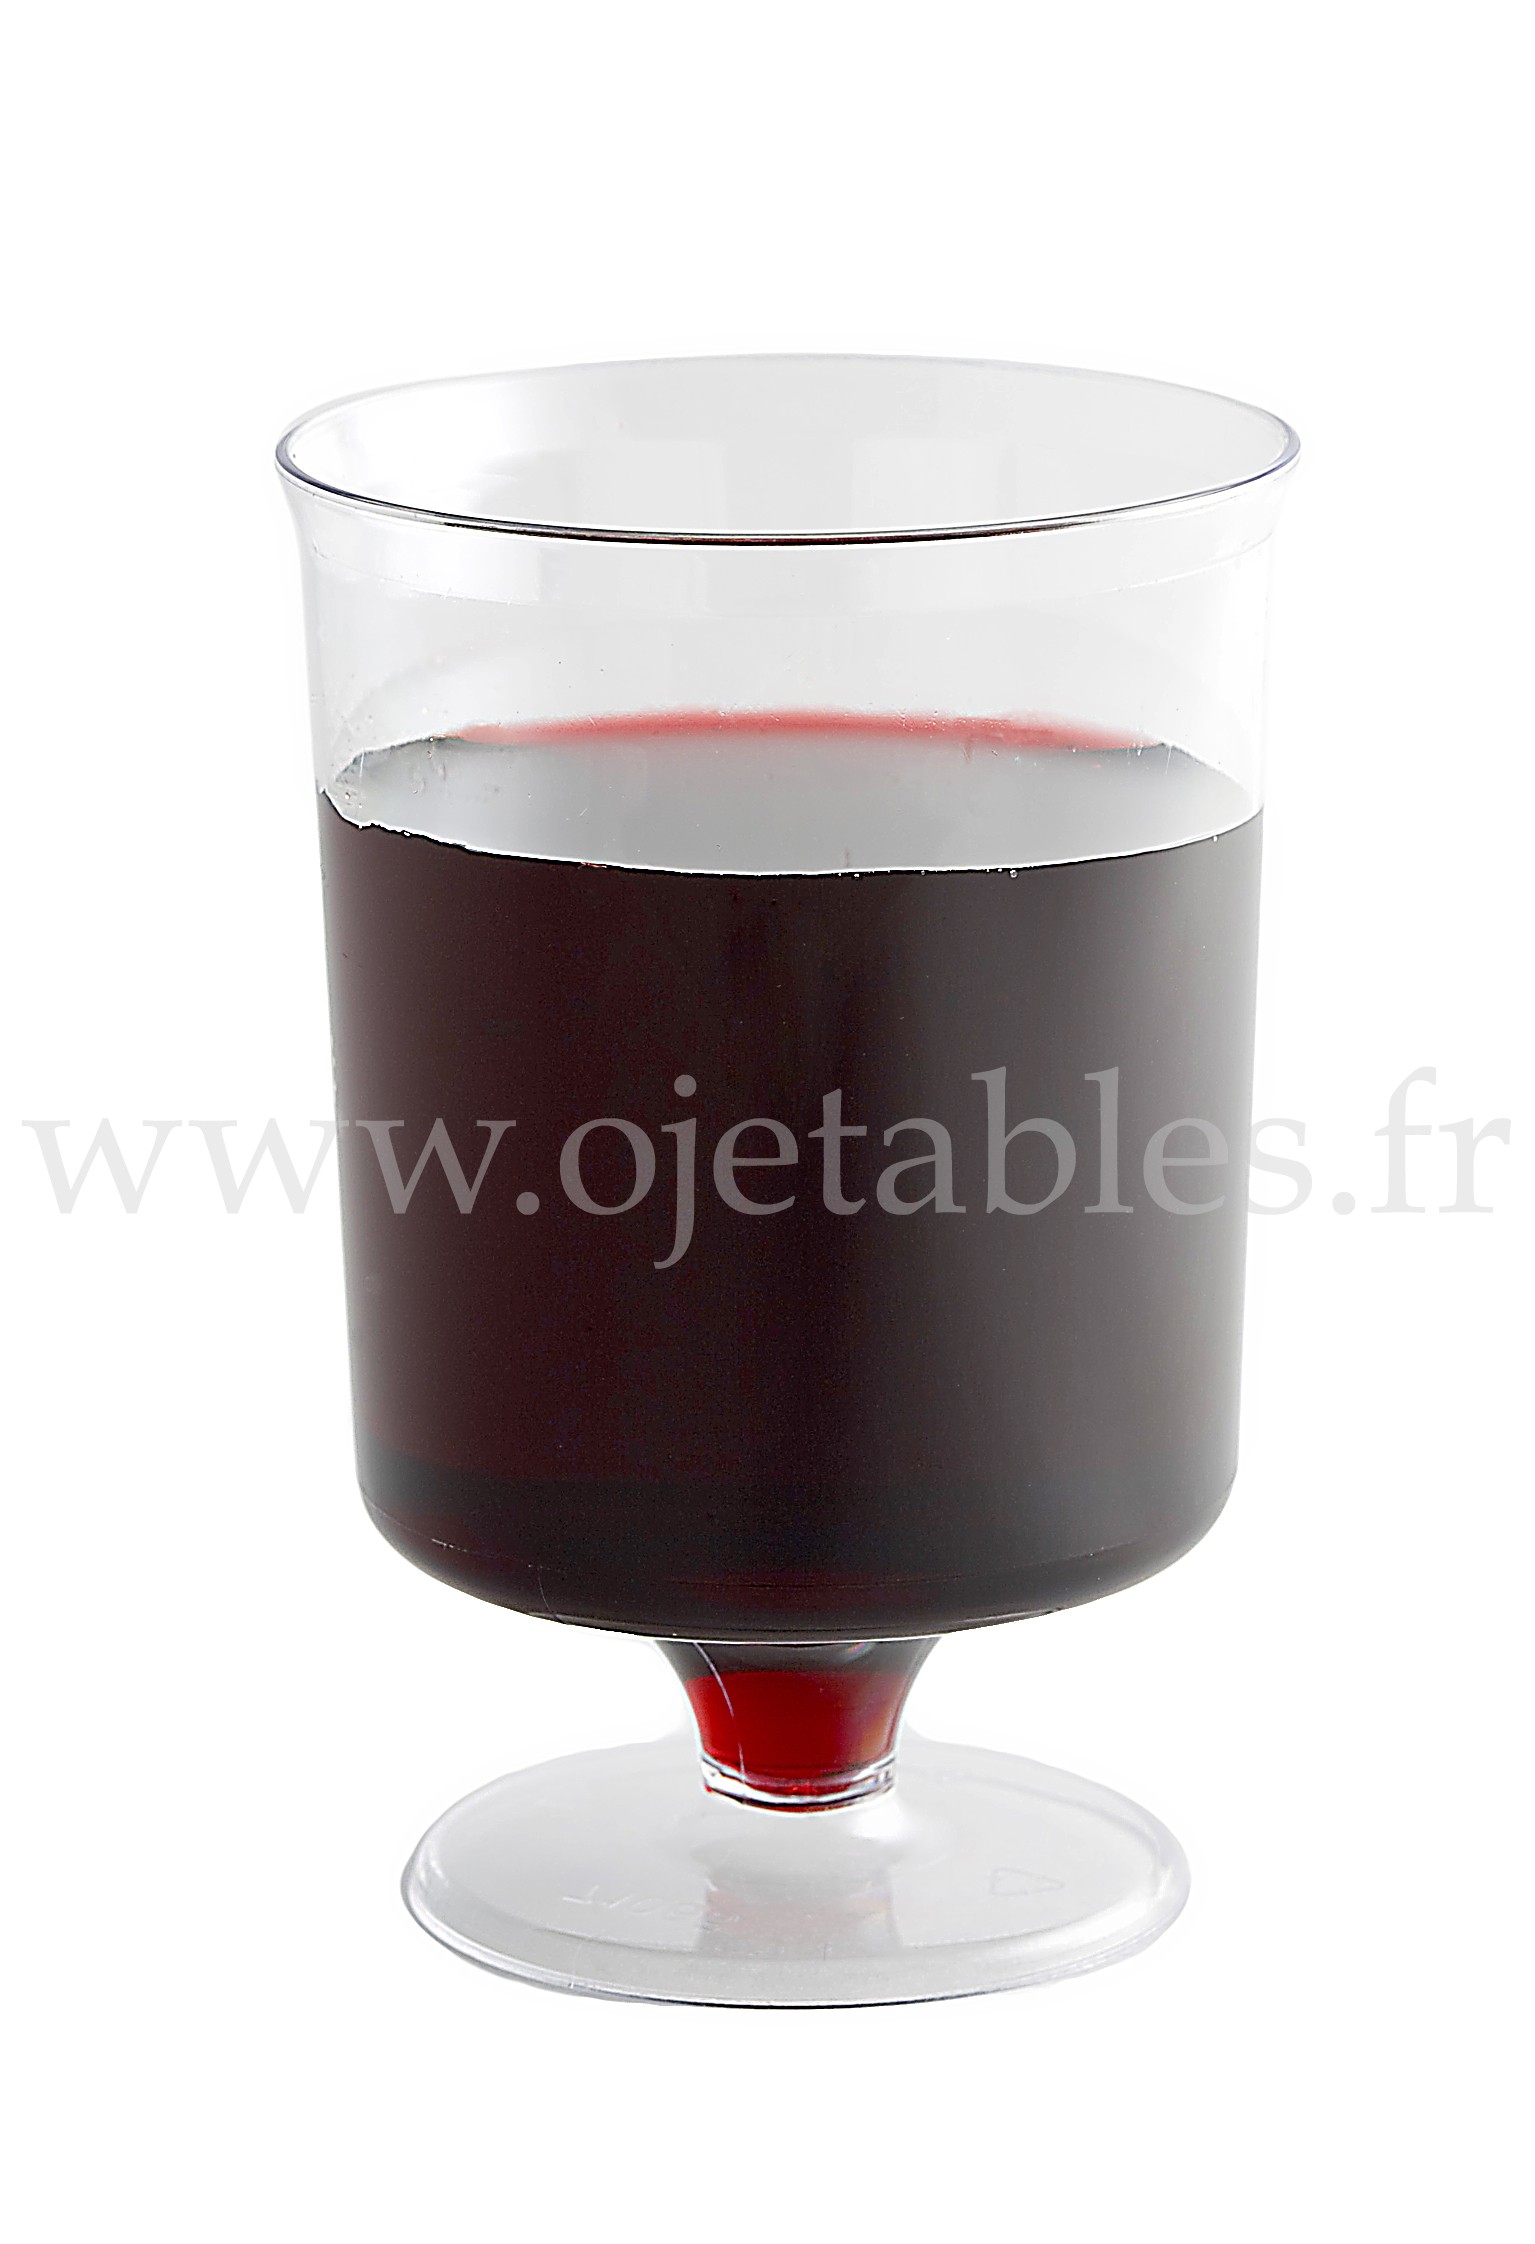 6 verres à vin design plastique rigide or 15 cl